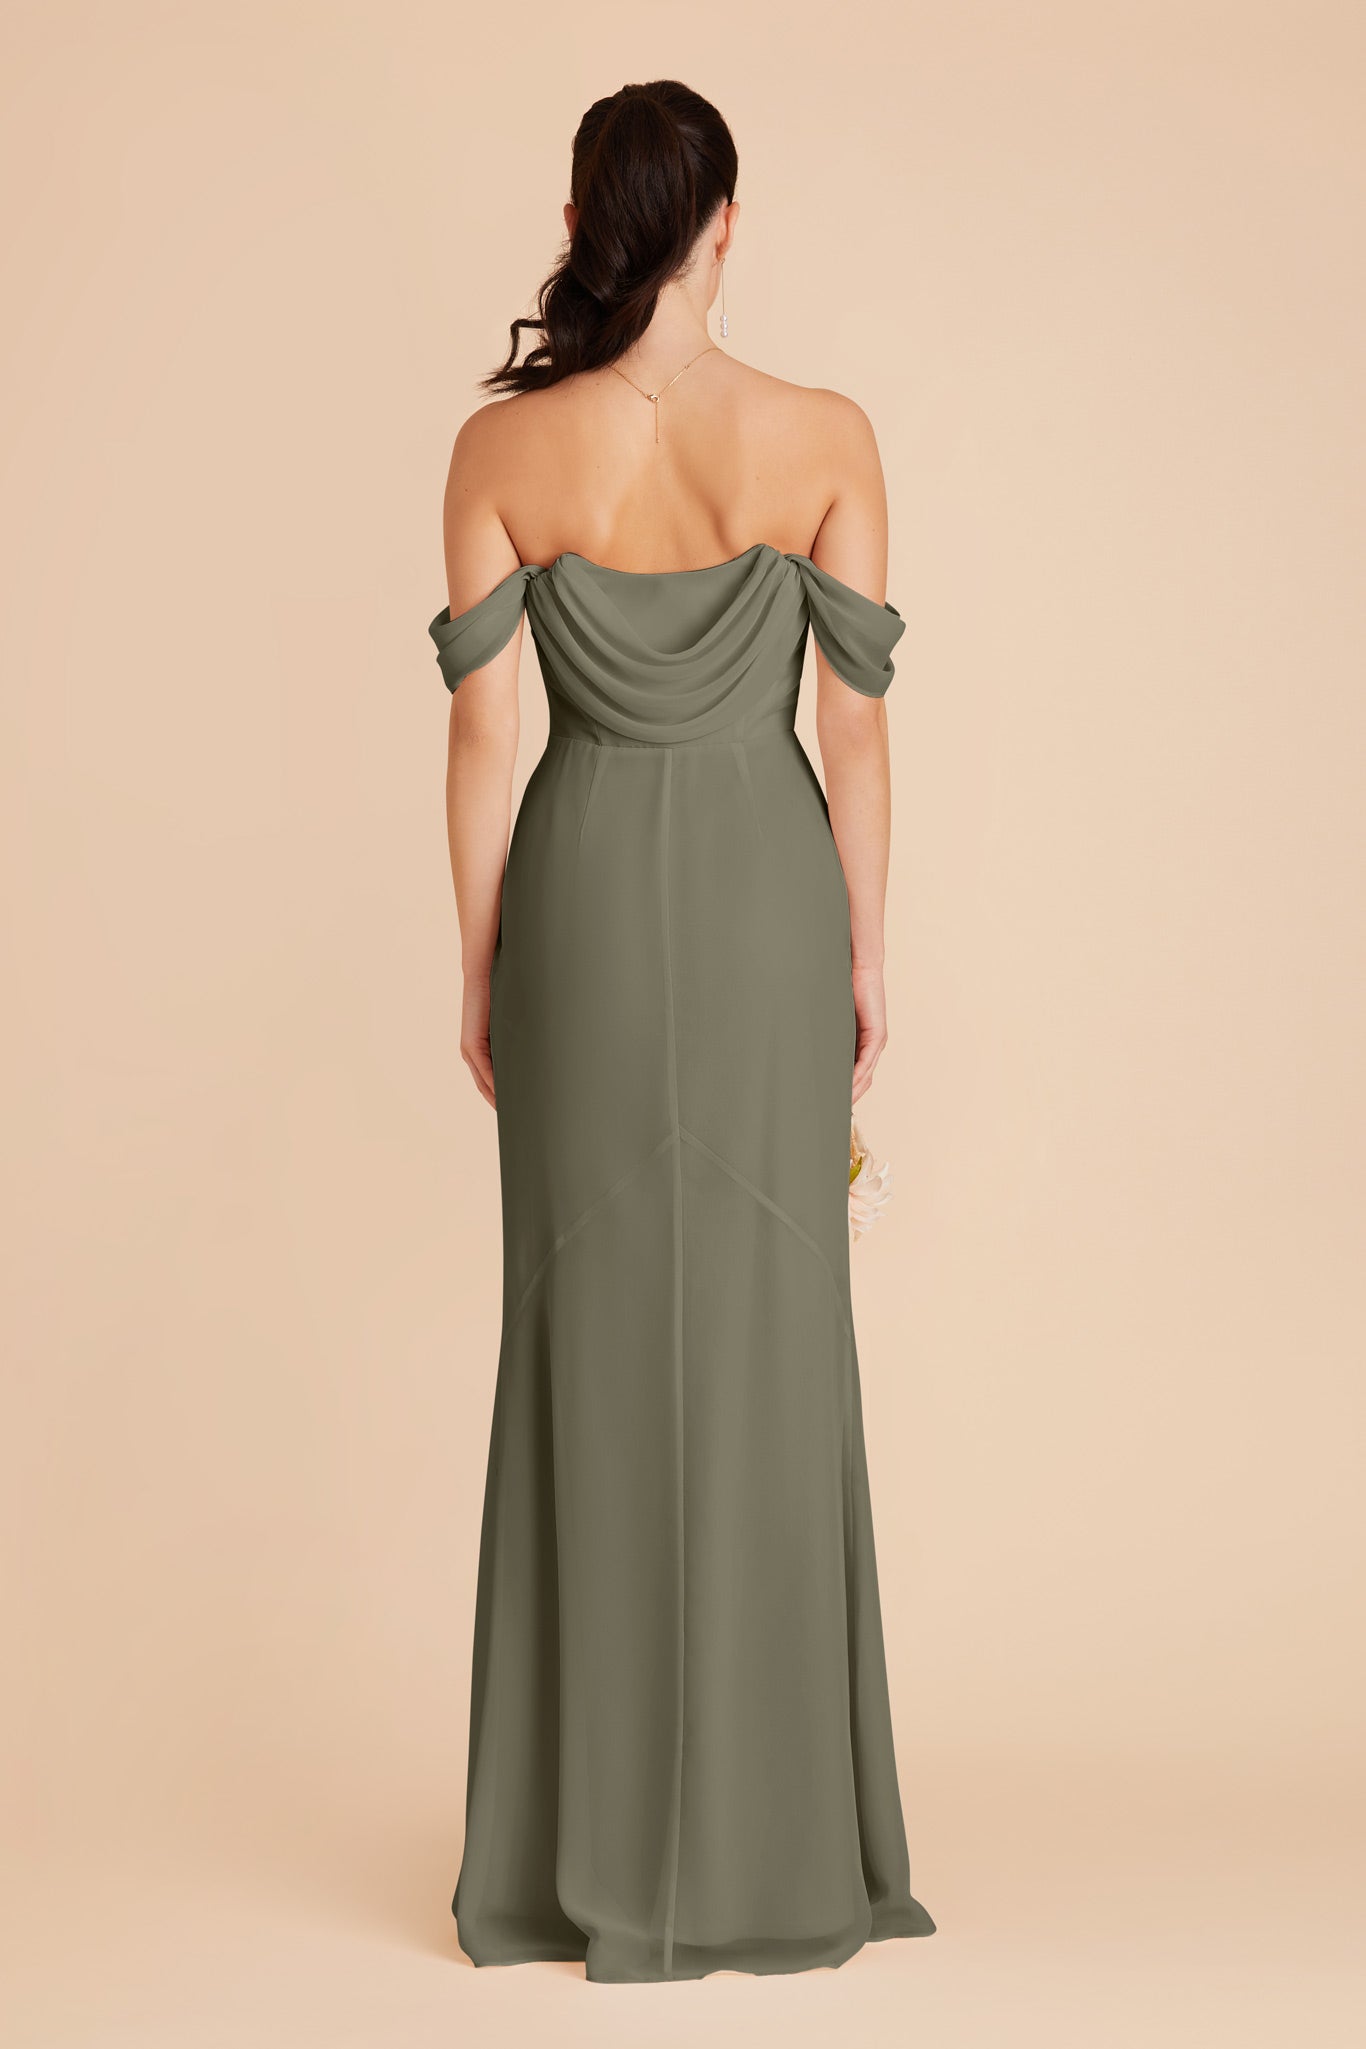 Moss Green Mira Convertible Dress by Birdy Grey